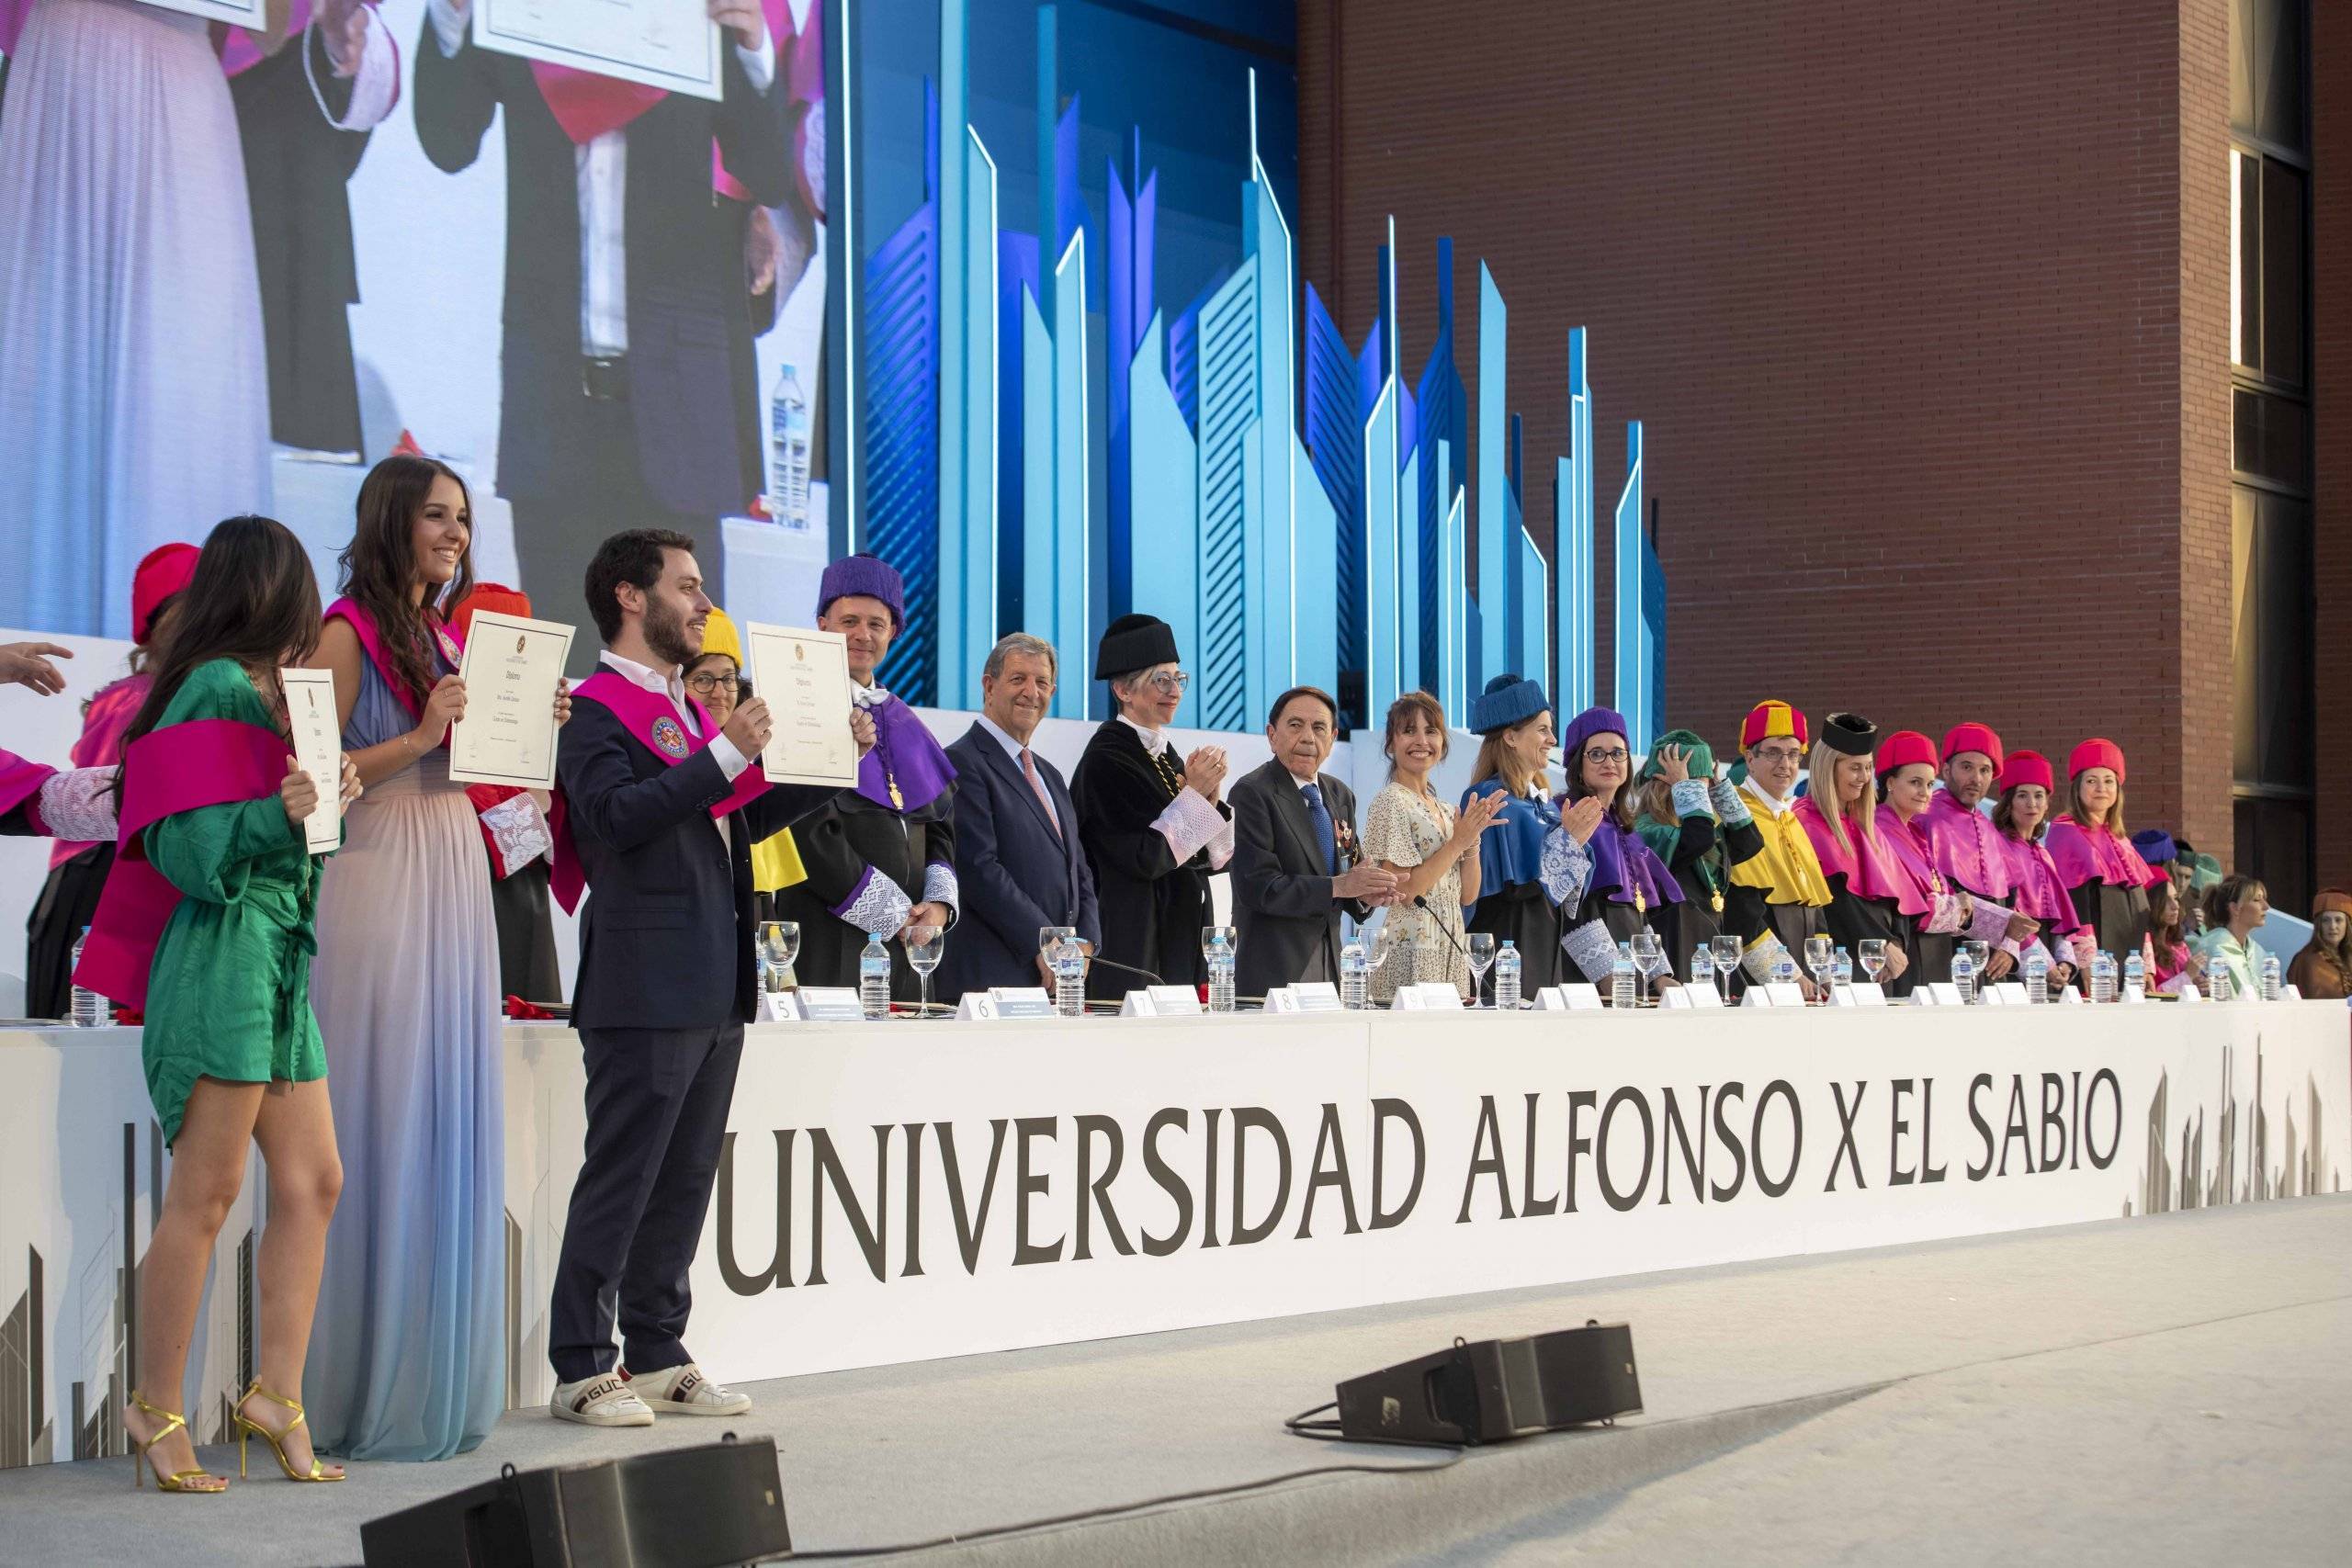 El alcalde, Luis Partida, en la mesa presidencial del acto de graduación de la UAX.